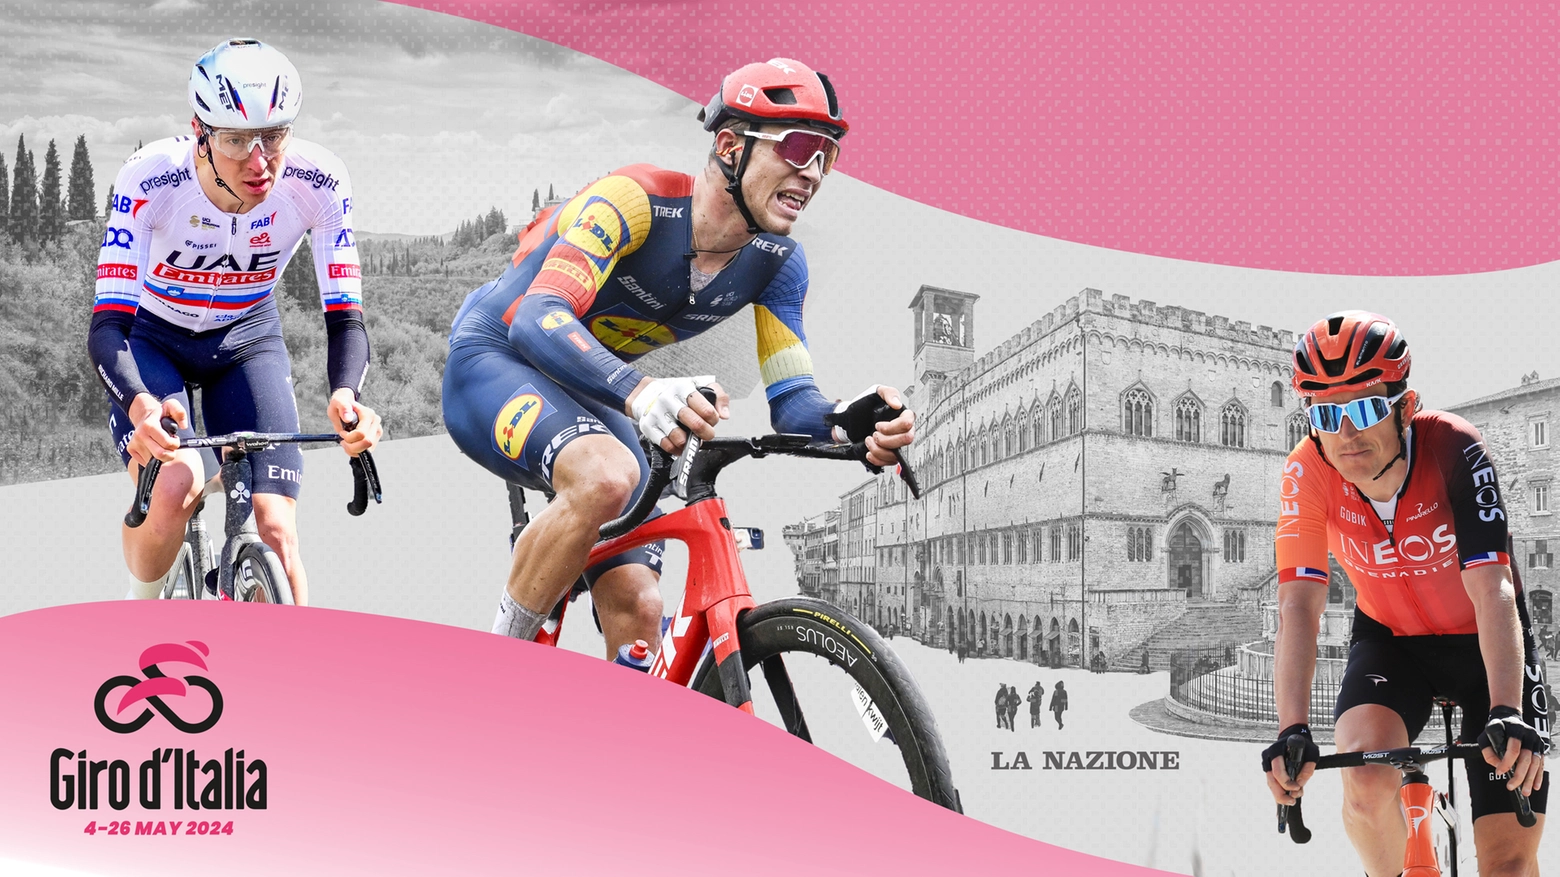 Il Giro d'Italia passa da Liguria, Toscana e Umbria: una grande festa rosa